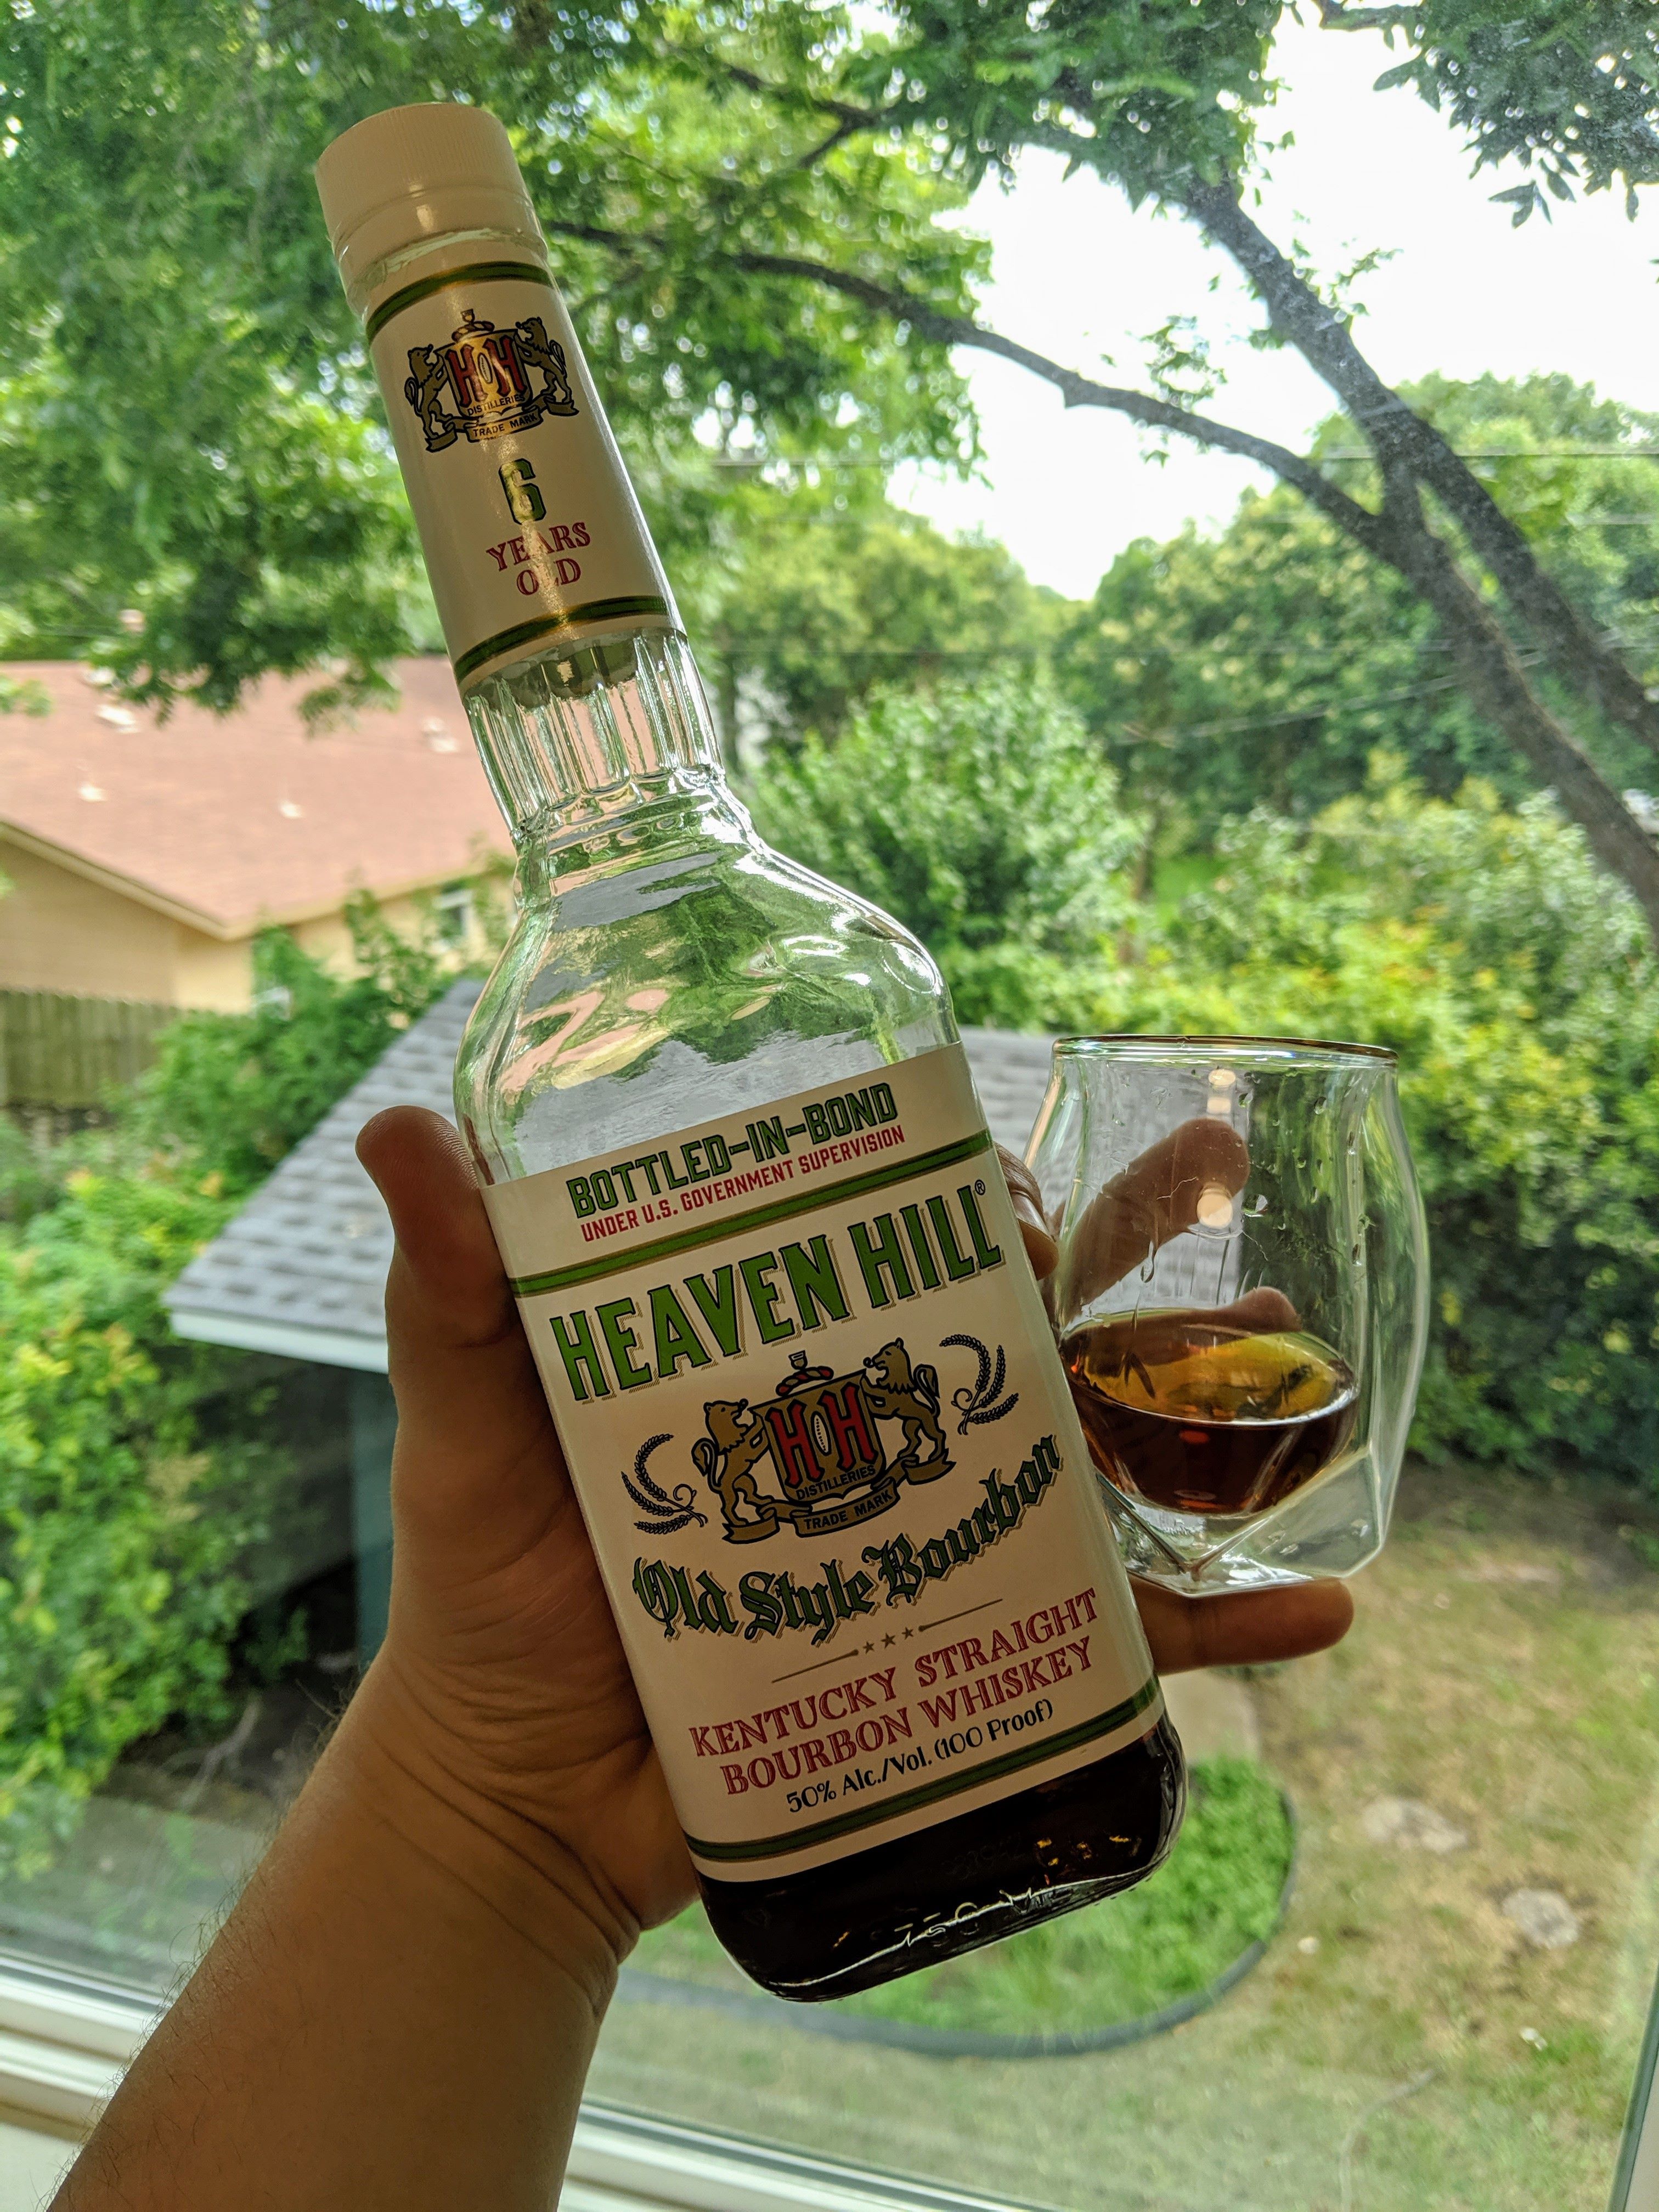 heaven-hill-bottled-in-bond-review-bourbon-liquor-kentucky-straight